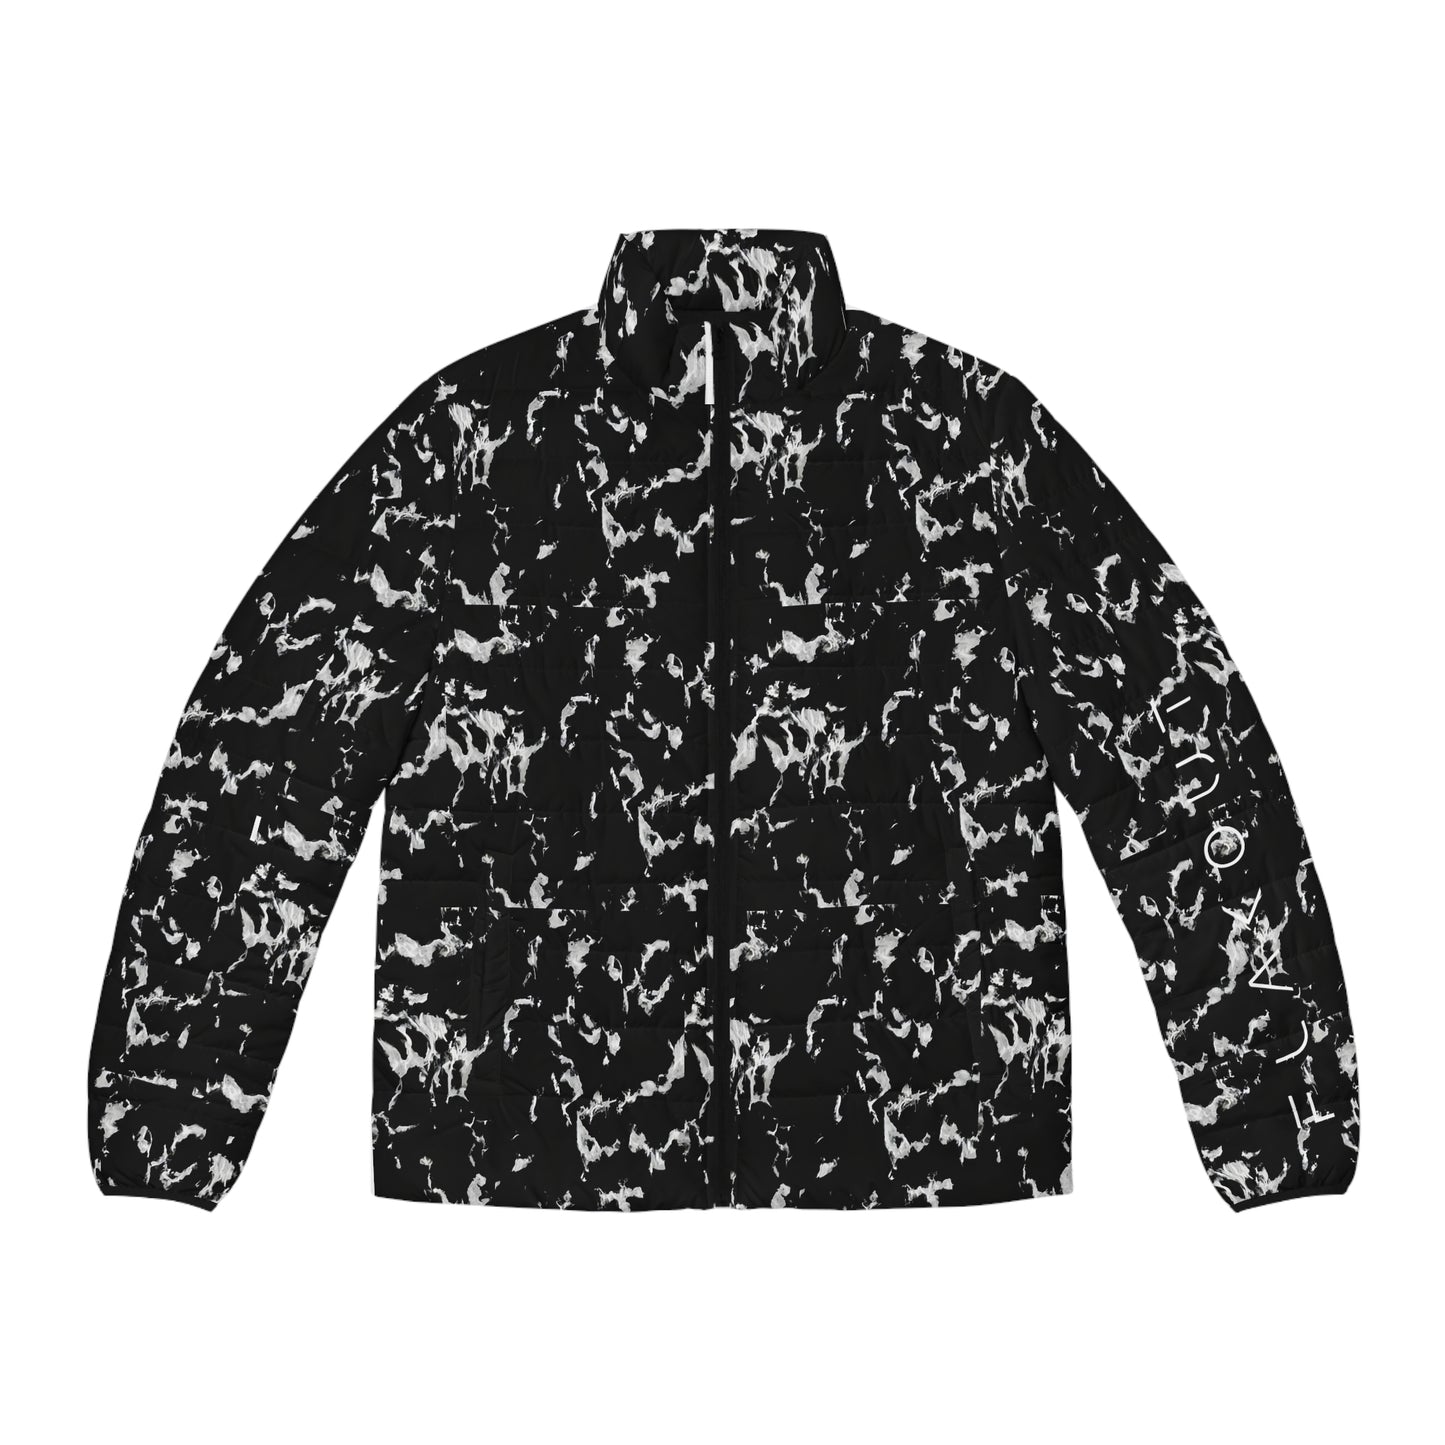 B/W Tie Dye Puffer Jacket